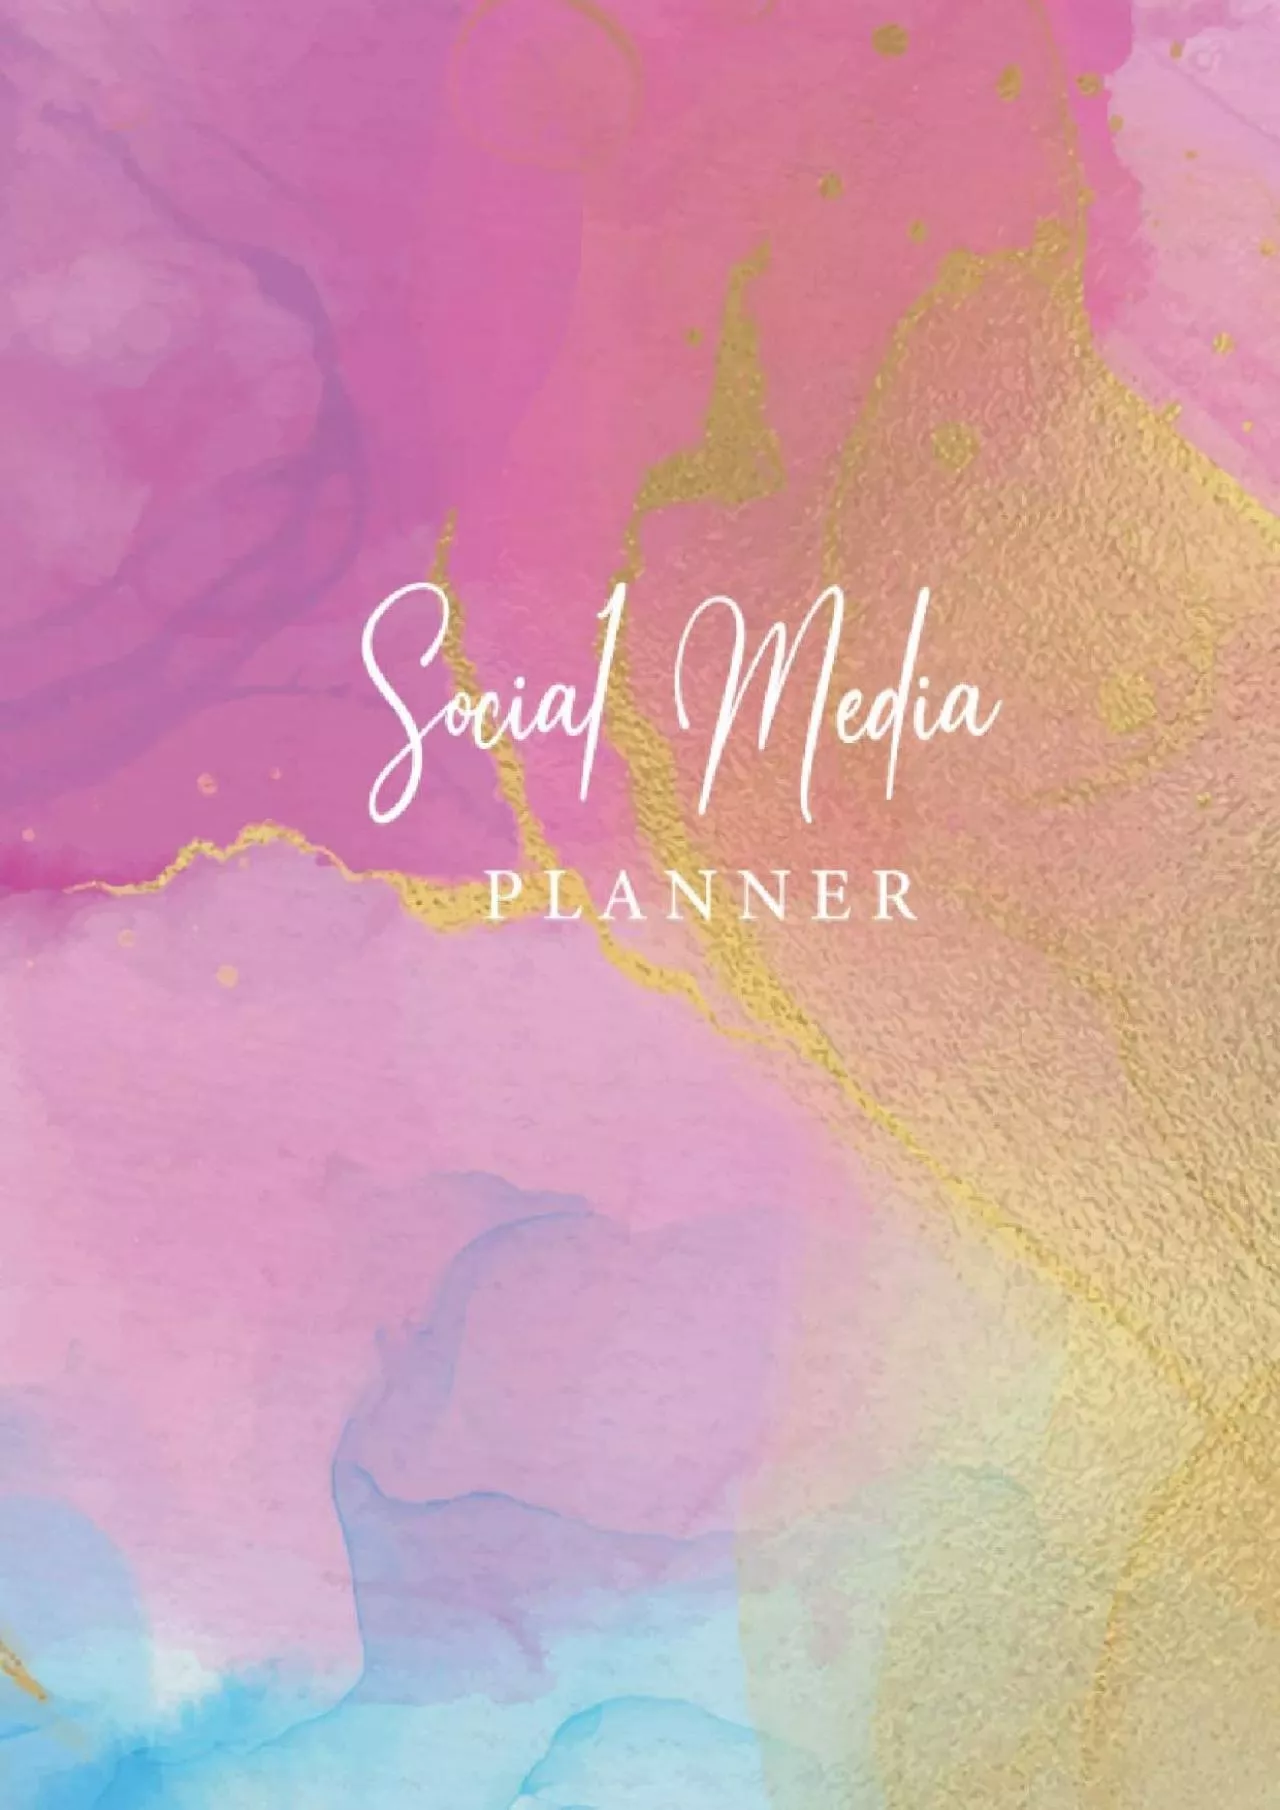 Social Media Planner: Social Media Planner to organize all your Social Media posts, social